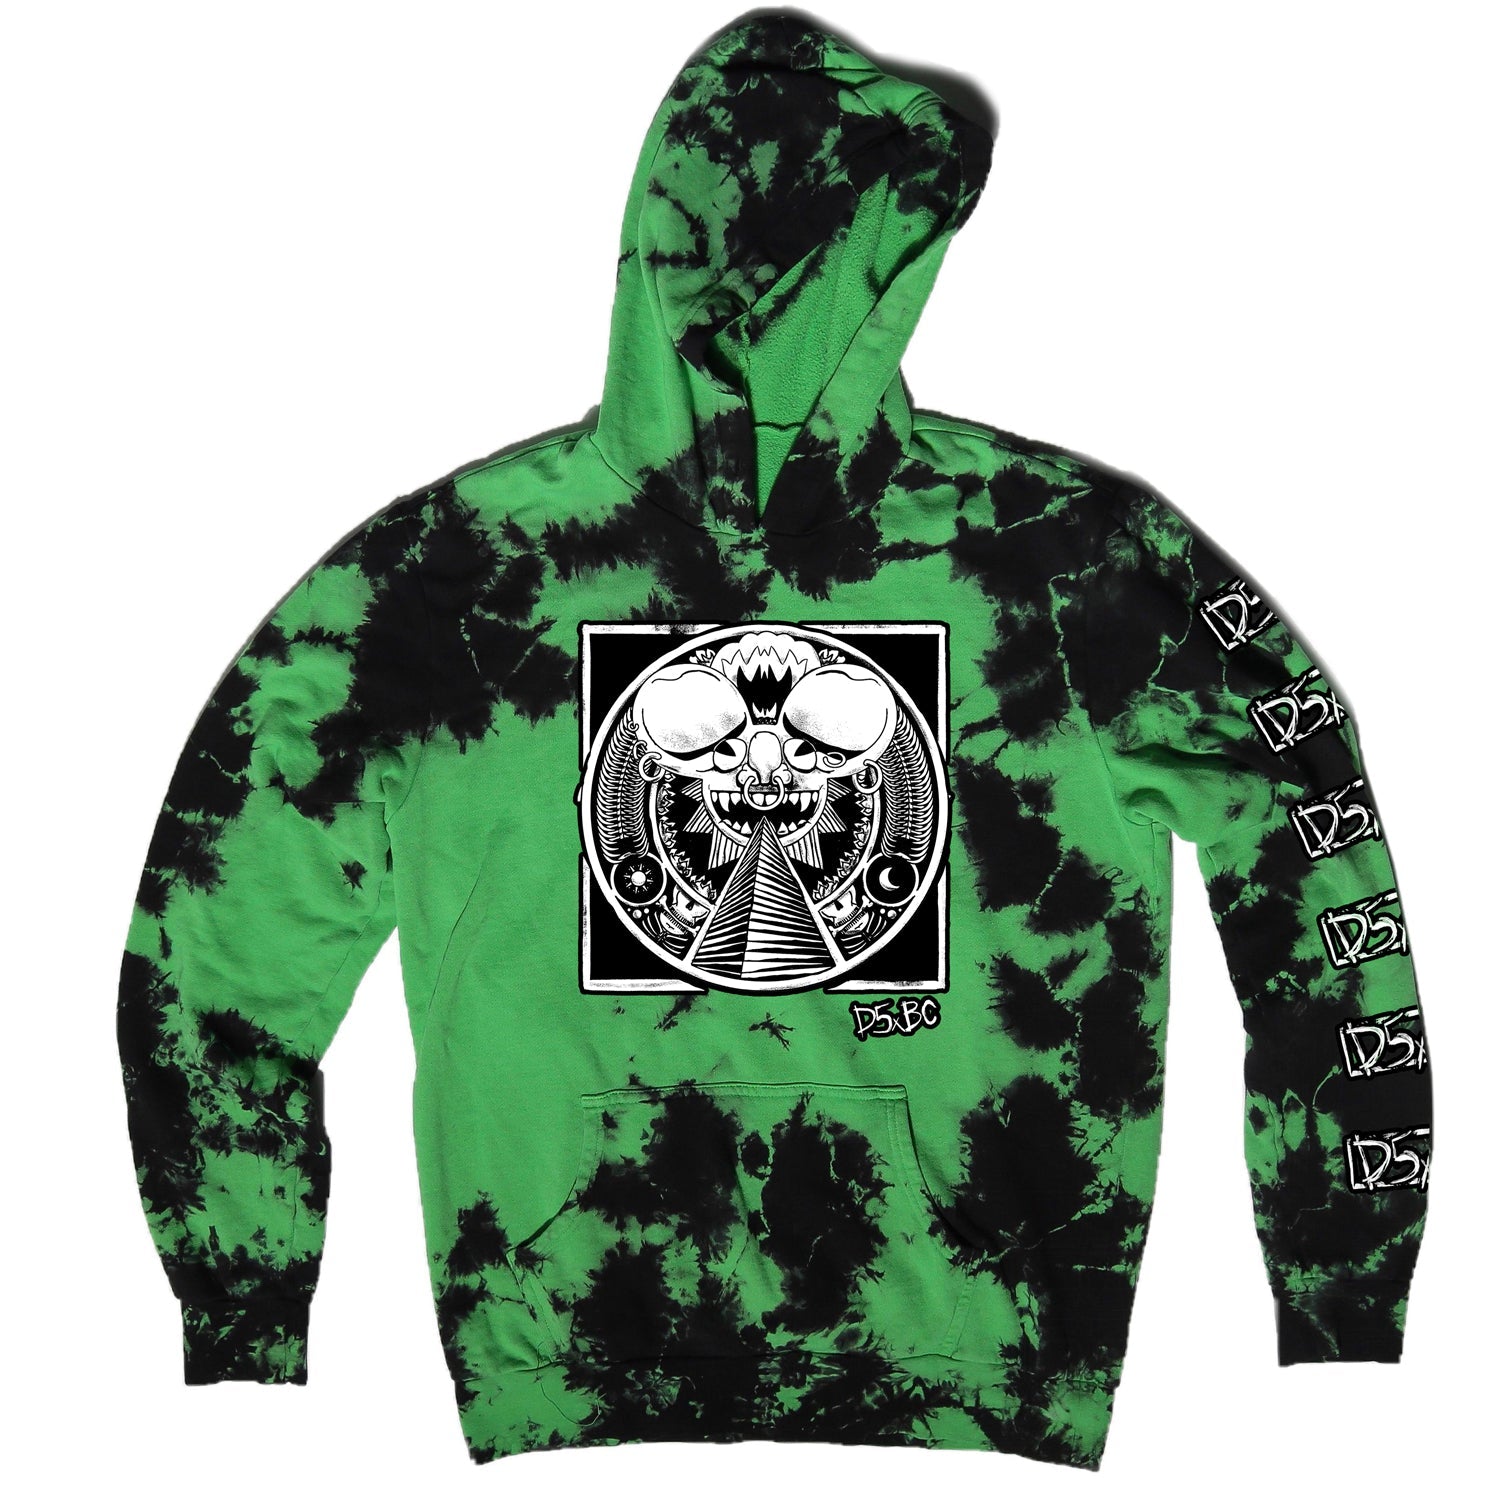 deadmau5 x Blackcraft Cult - Ancient Mau5 - Green Lightning Dye Pullover